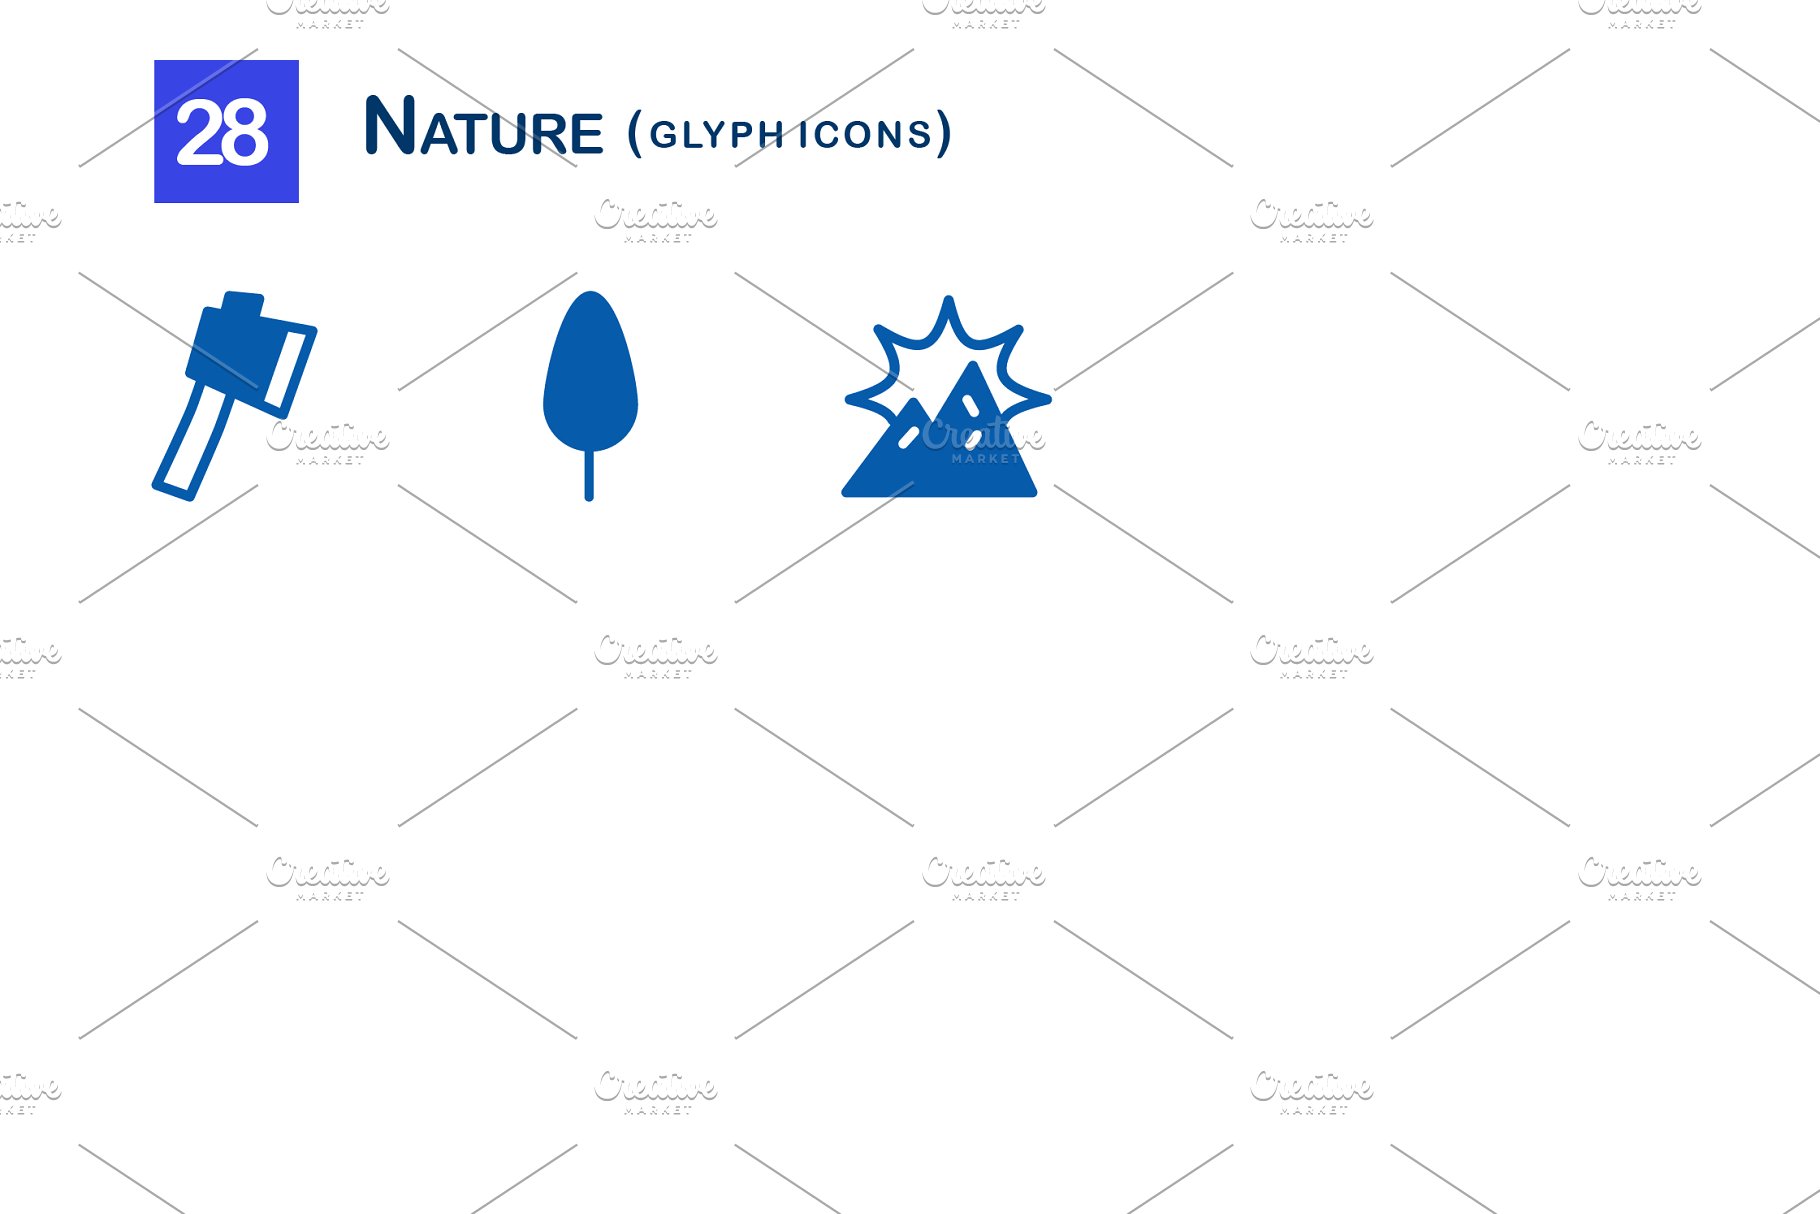 28个大自然元素字体非凡图库精选图标 28 Nature Glyph Icons插图(2)